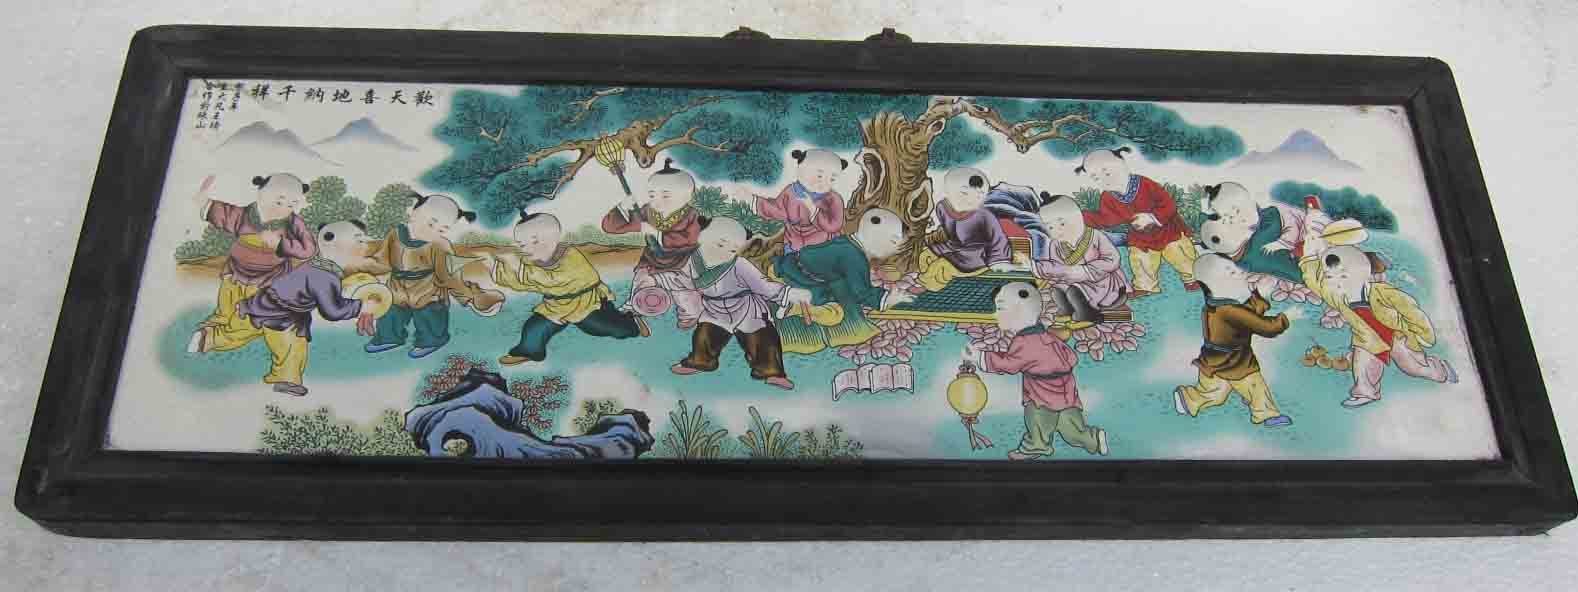 古玩老件童子贺寿粉彩瓷器挂屏 稀罕之物 年代不详 11325